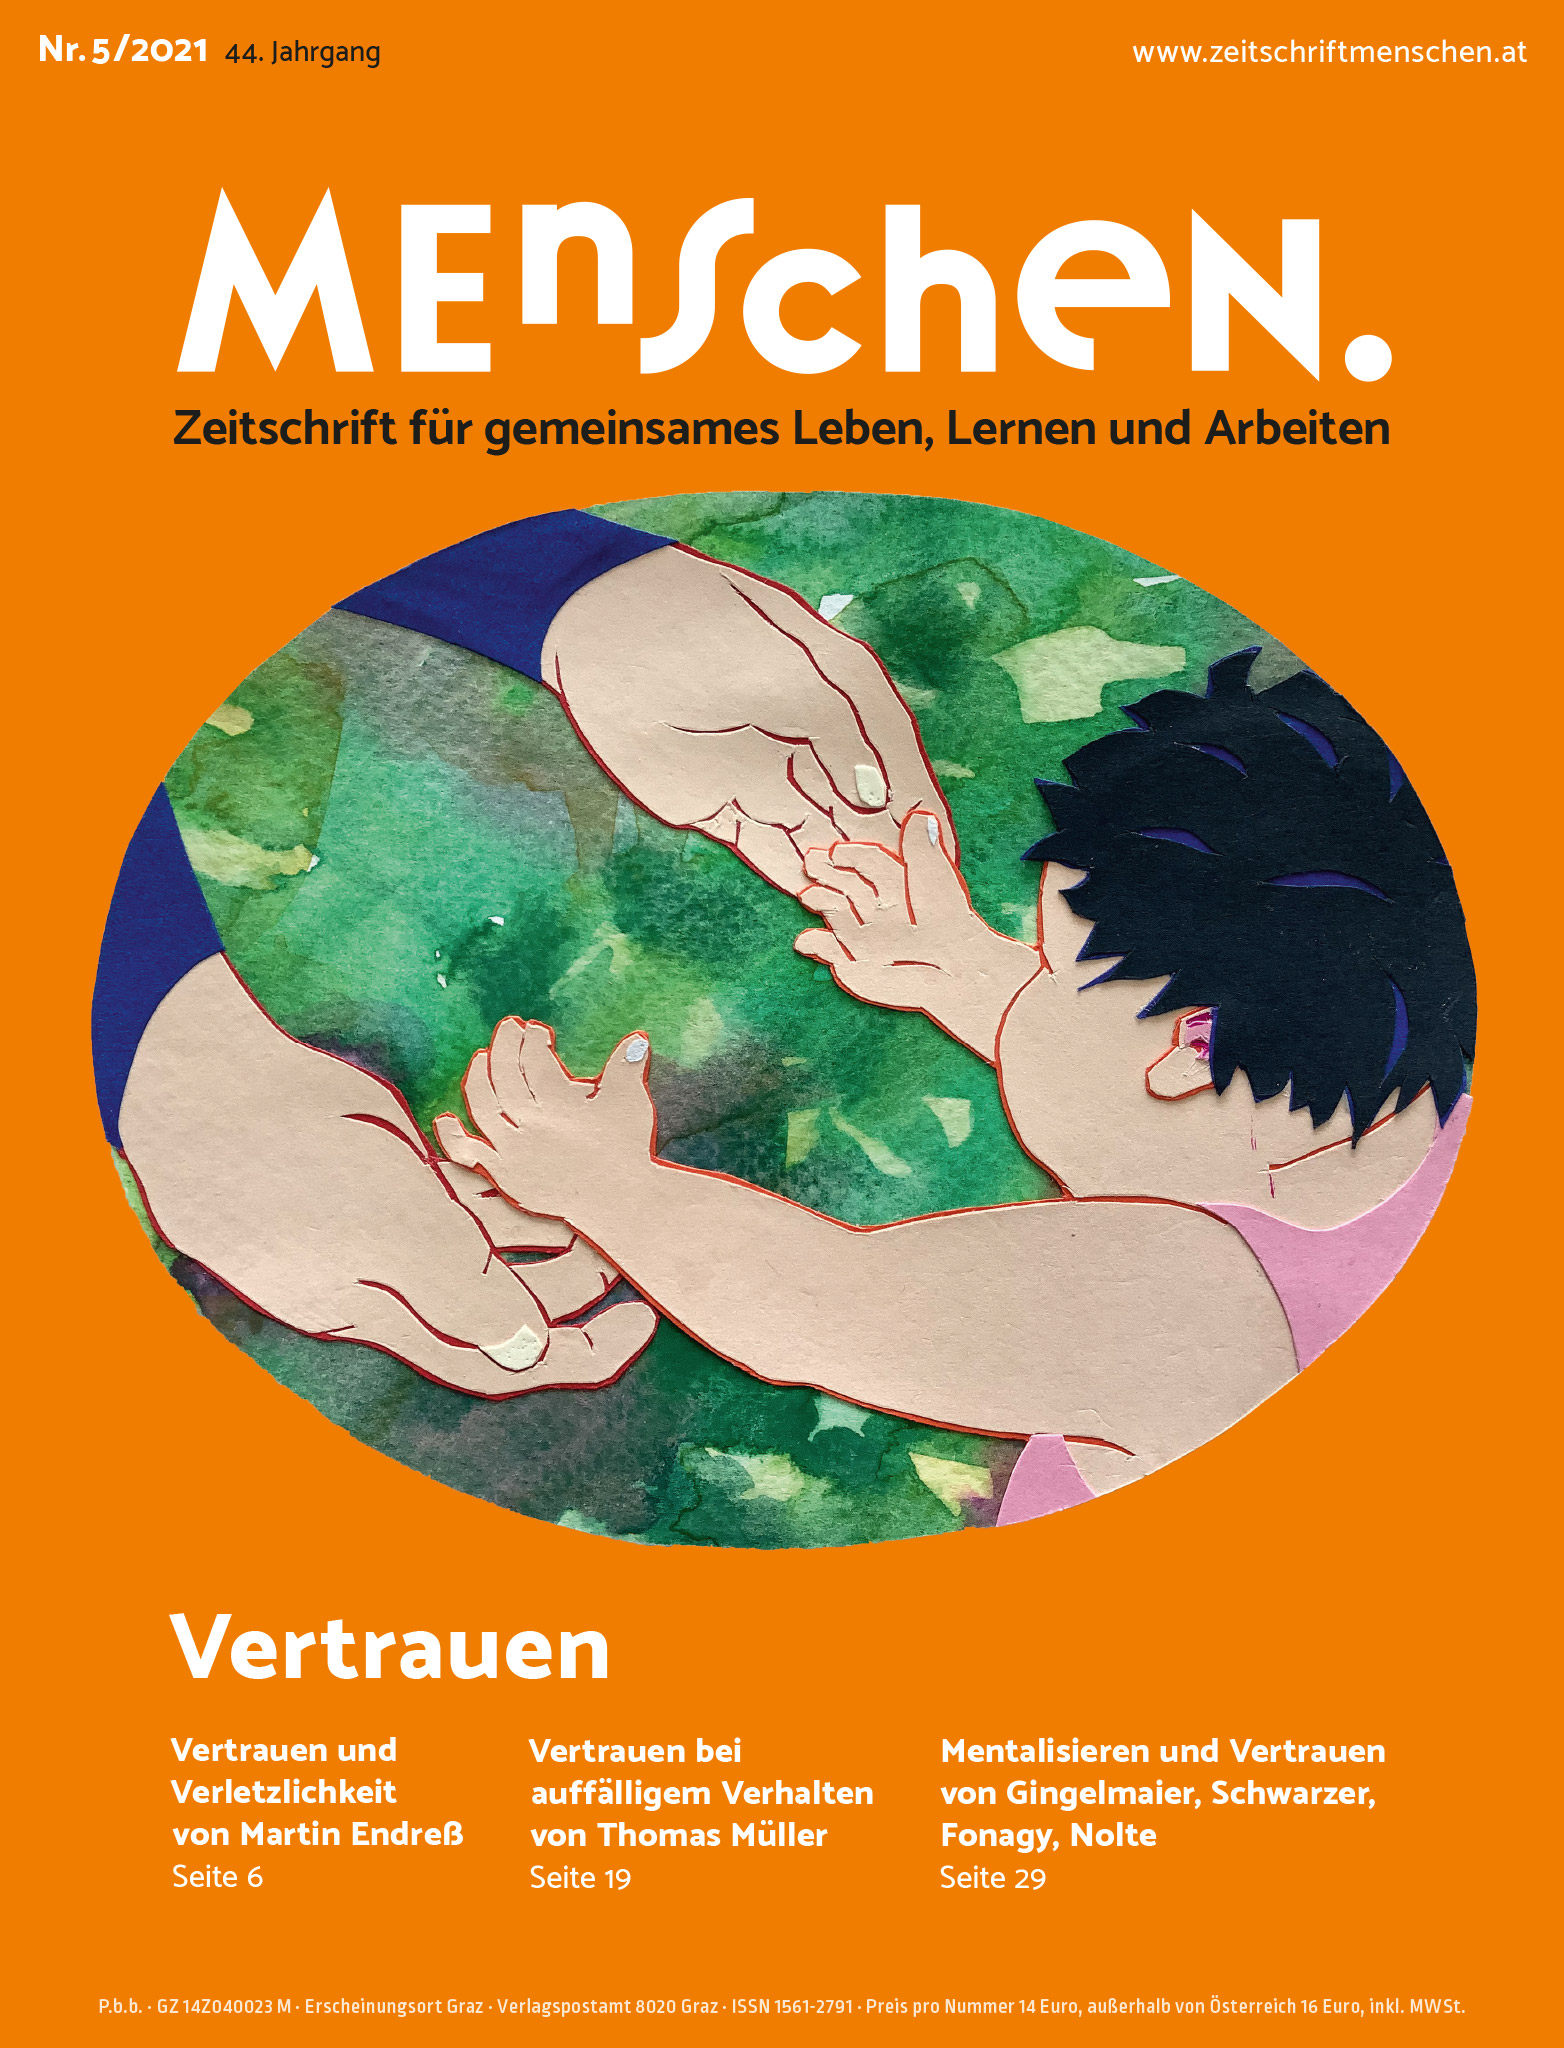 Titelbild der Zeitschrift BEHINDERTE MENSCHEN, Ausgabe 5/2021 "Vertrauen"